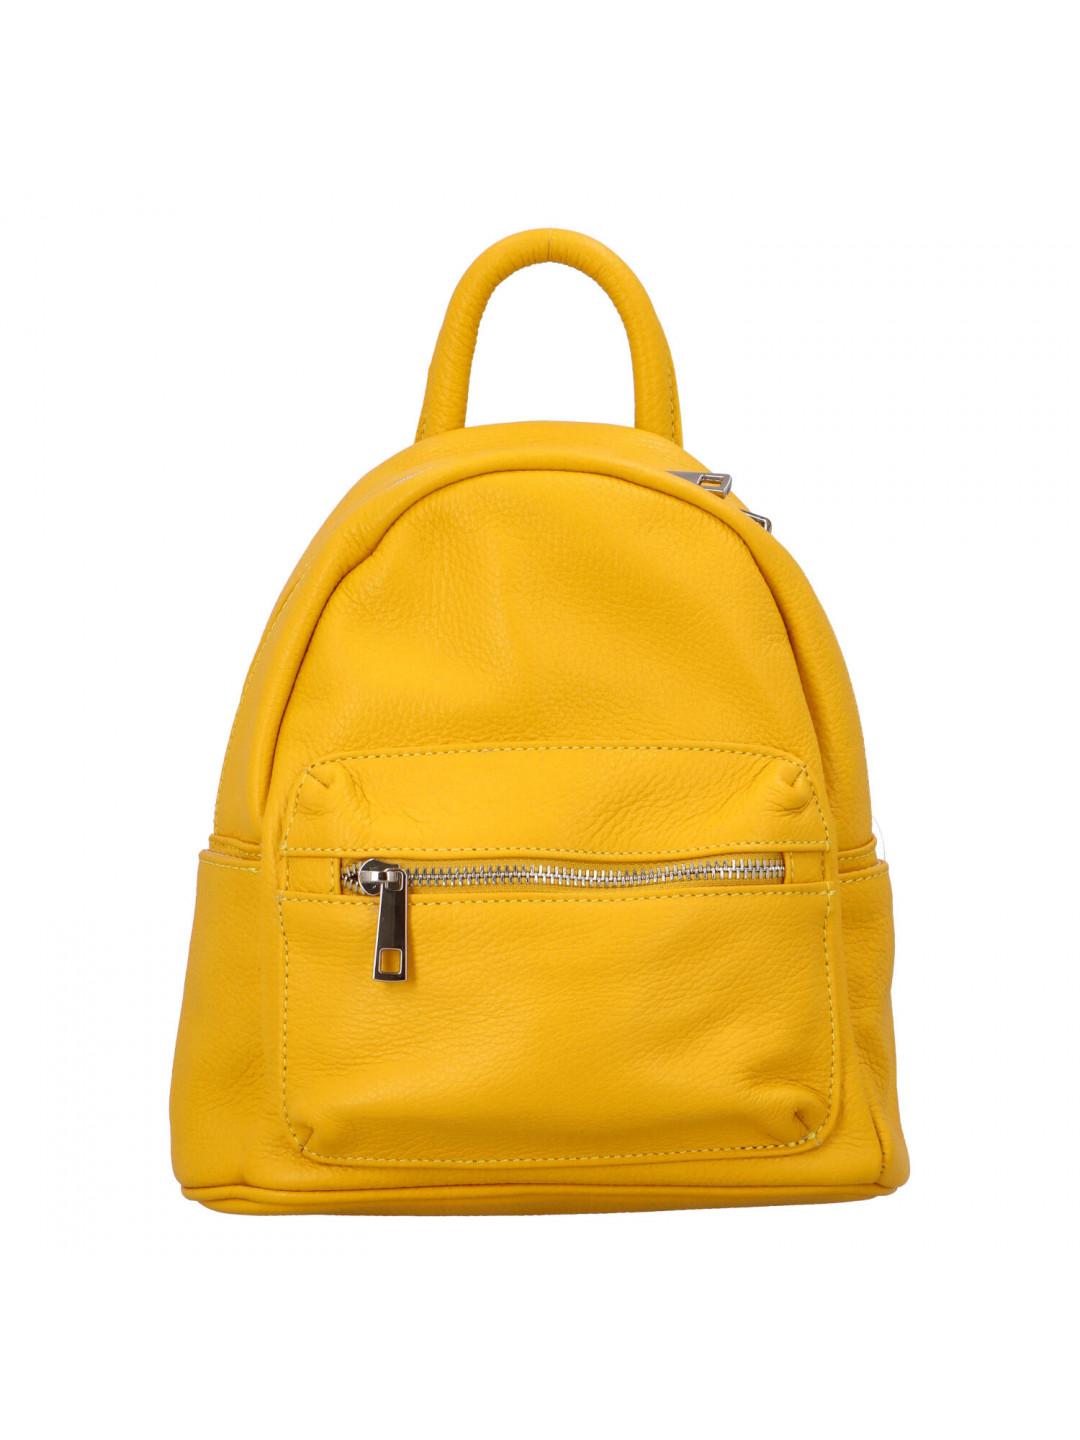 Malý dámský kožený batůžek žlutý – ItalY Crossan